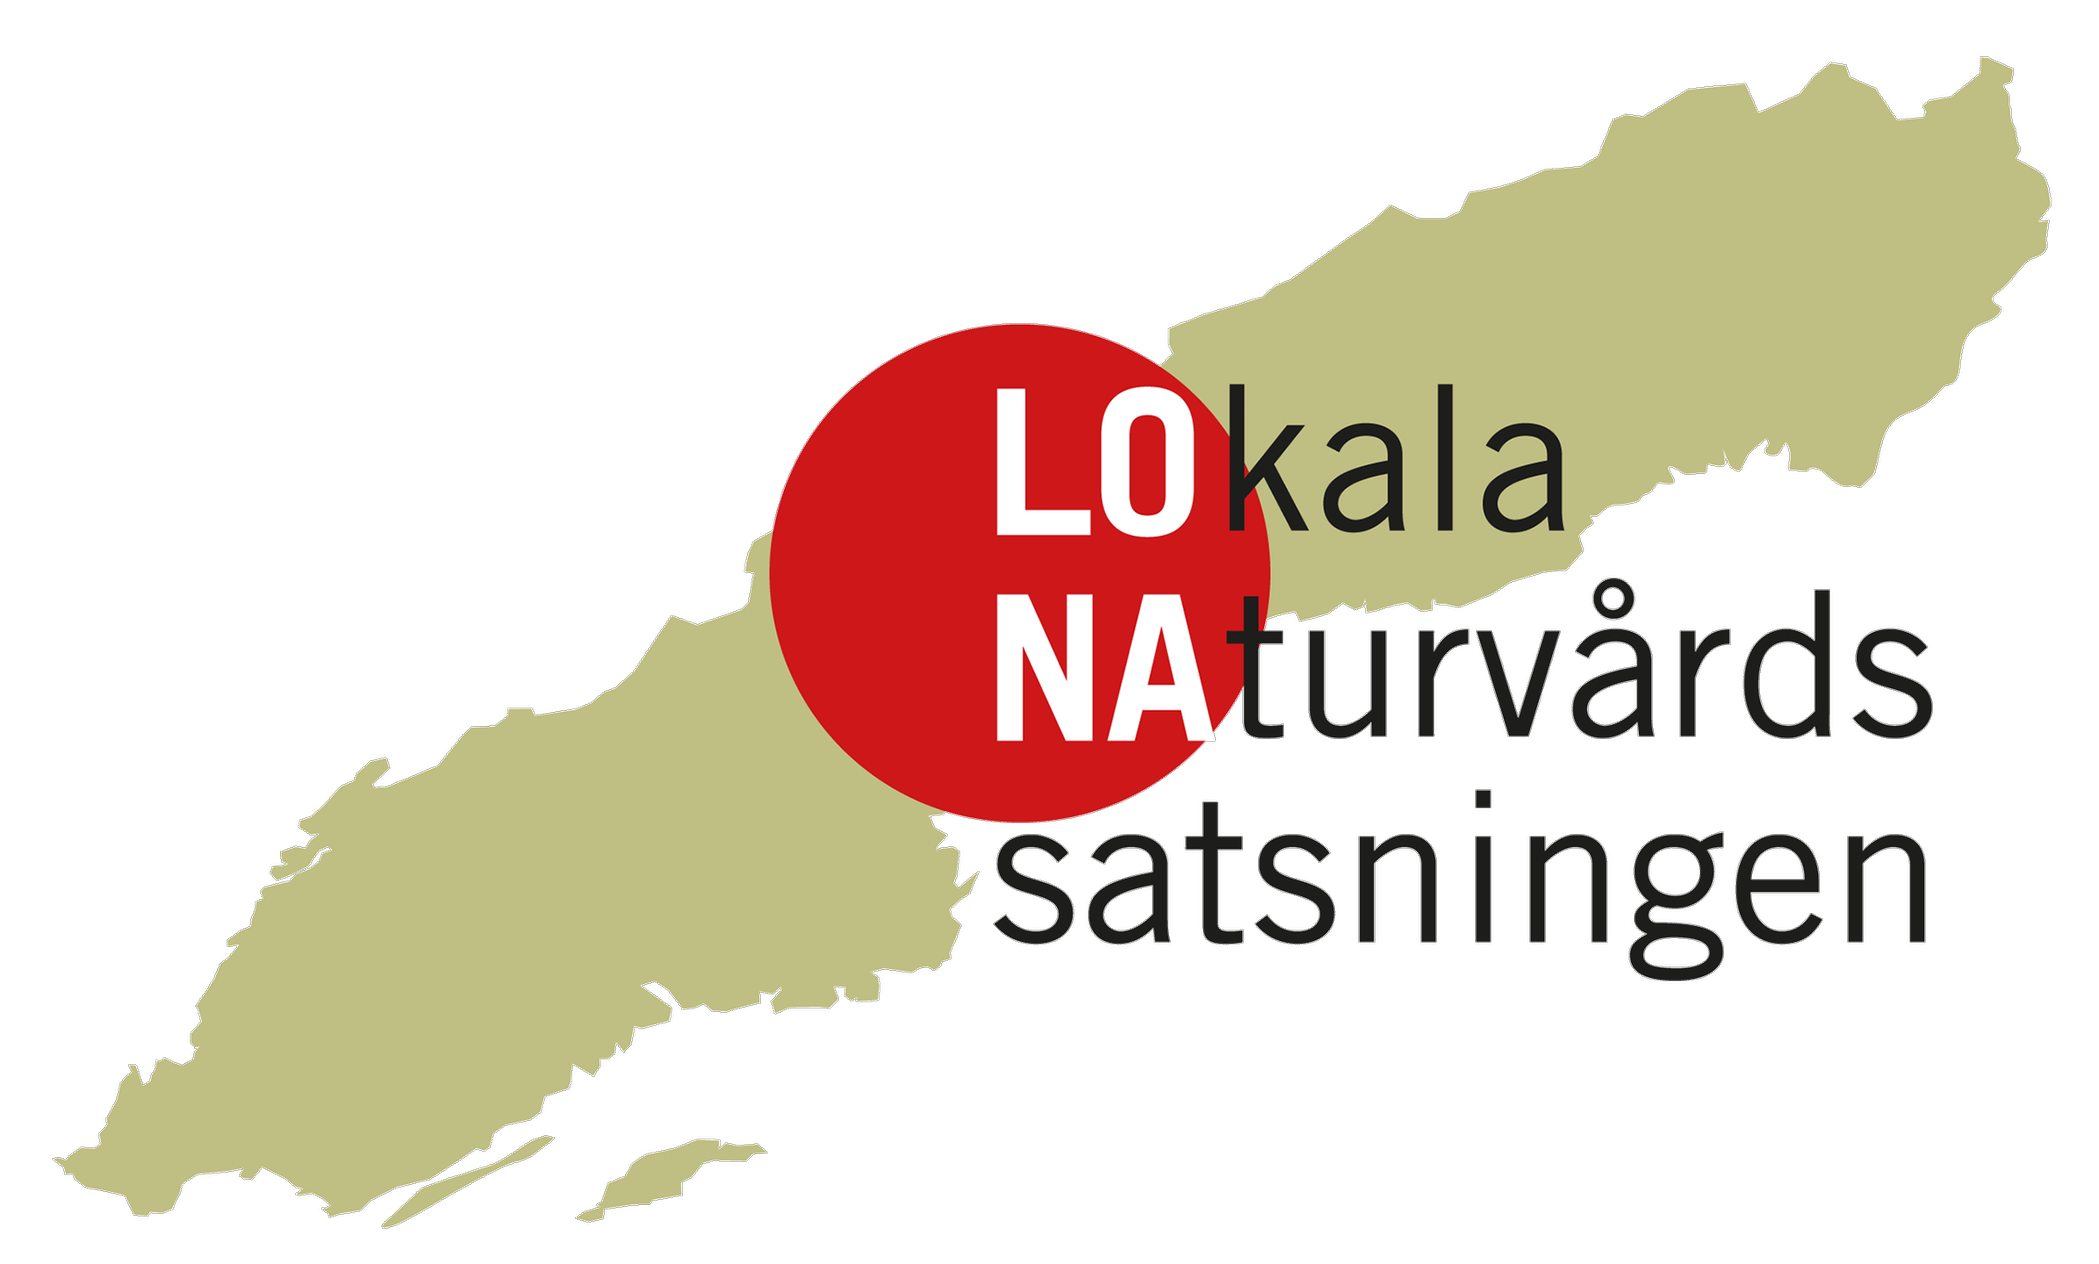 Logotyp för Lokala naturvårdssatsningen